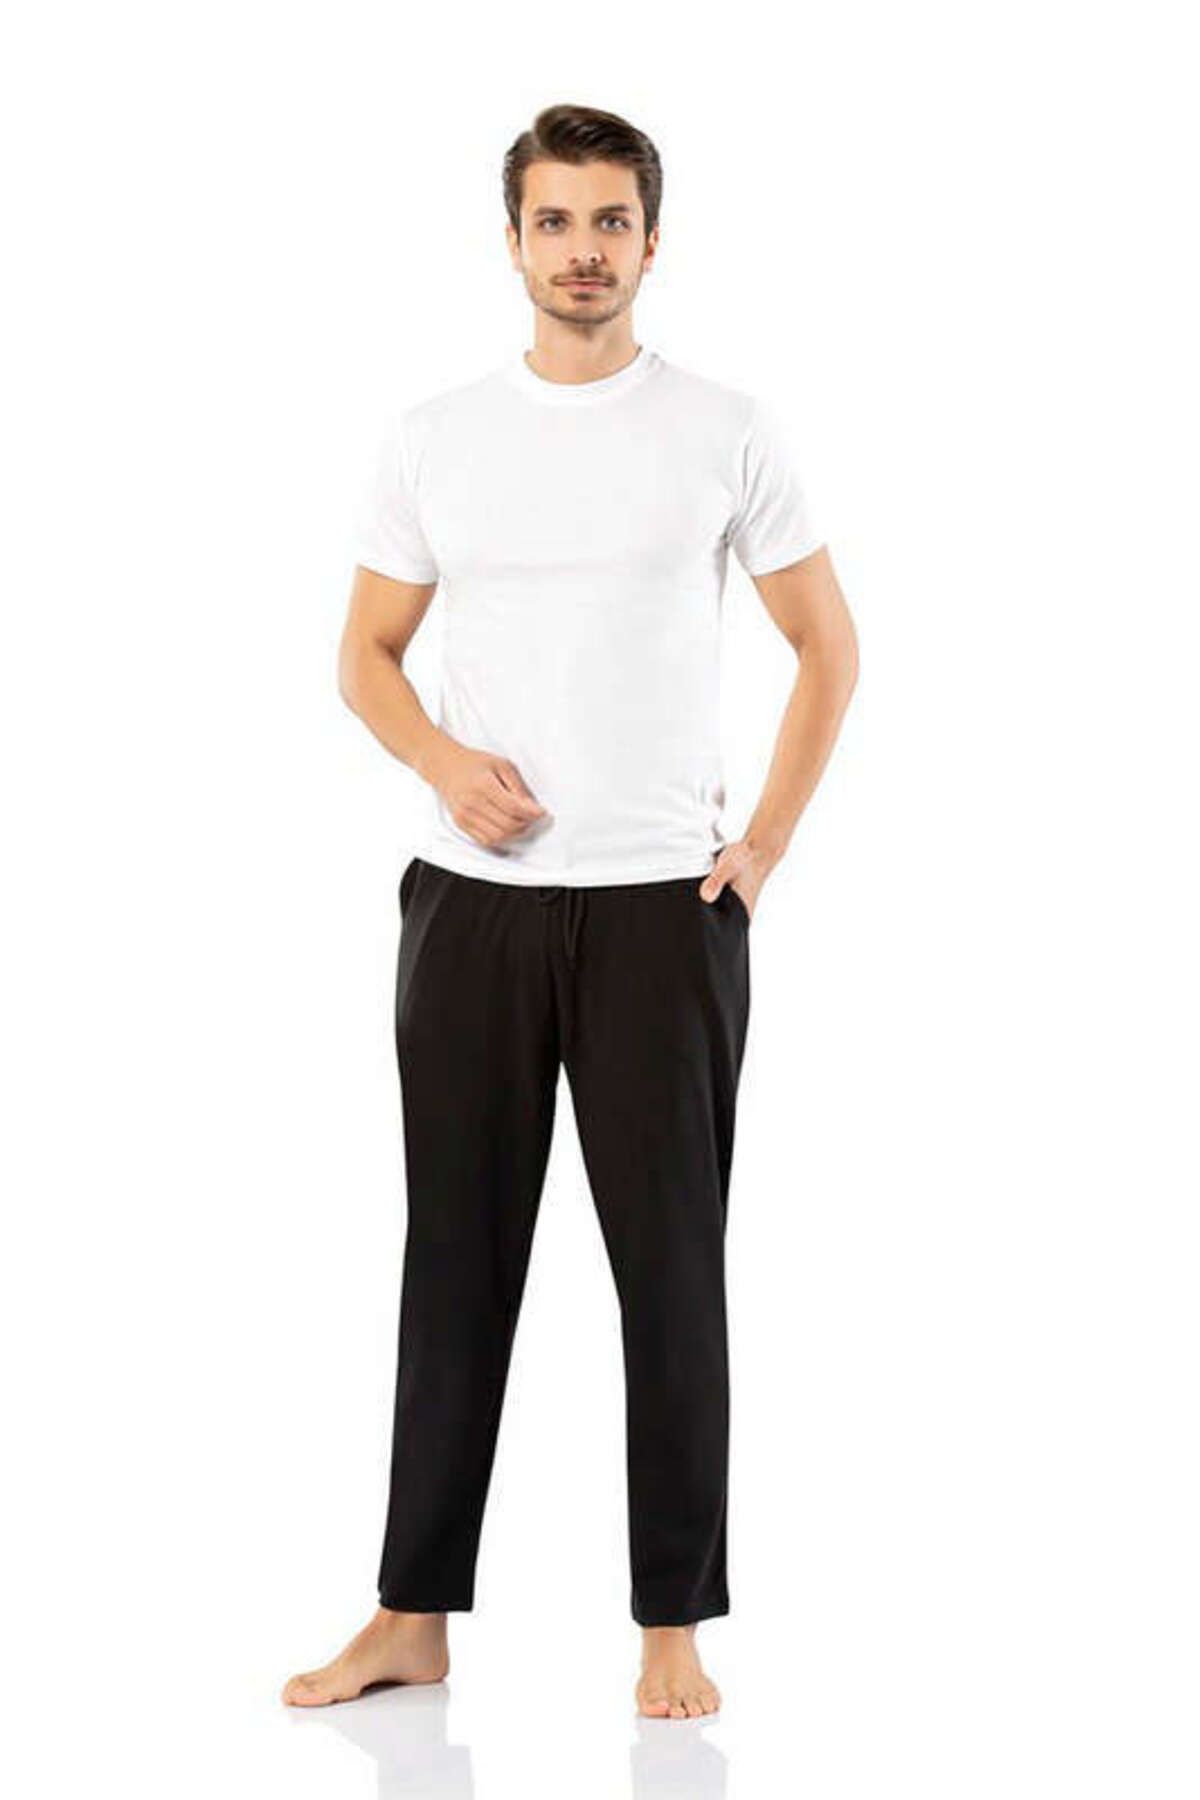 Weweus Siyah Erdem Iç Giyim Erkek Kışlık Eşofman Alt Renk Siyah Beden L 315105